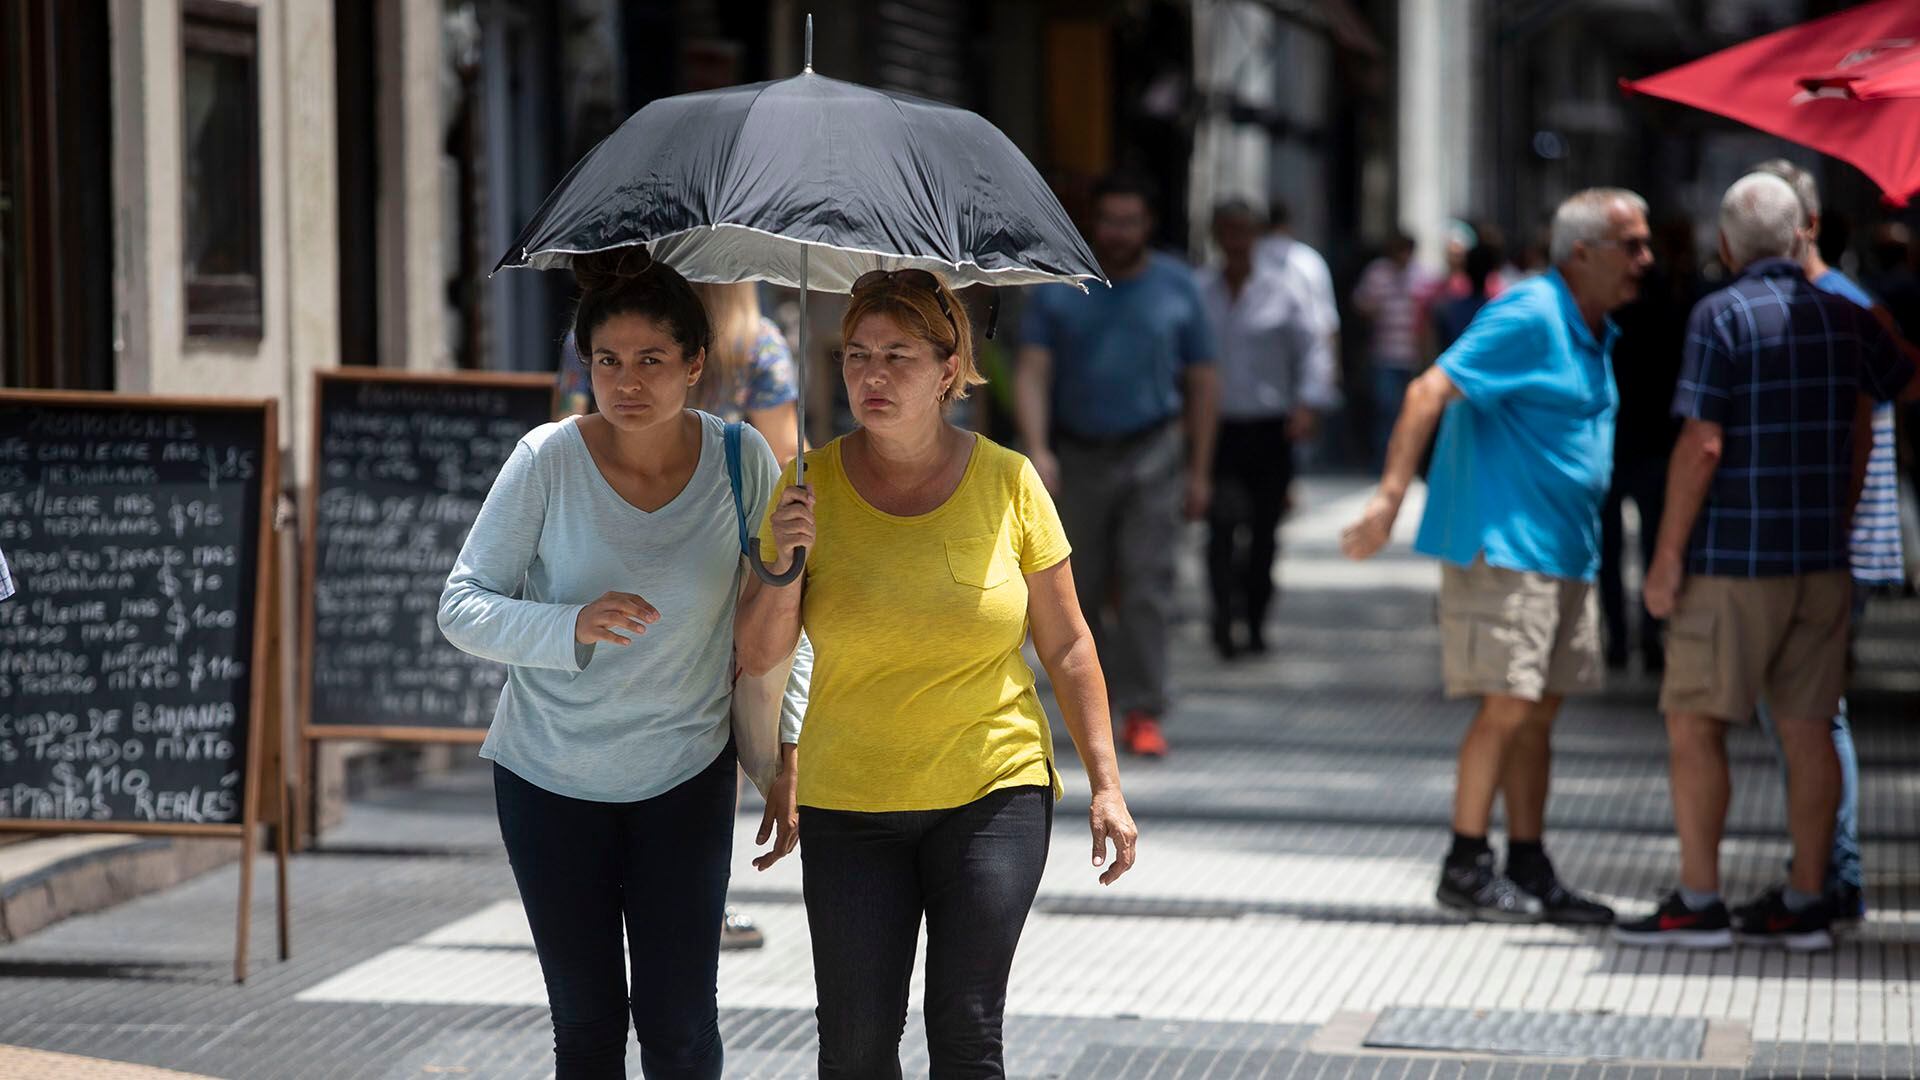 La ciudad de Buenos Aires superará diariamente los 33 grados a lo largo de toda la semana (NA)